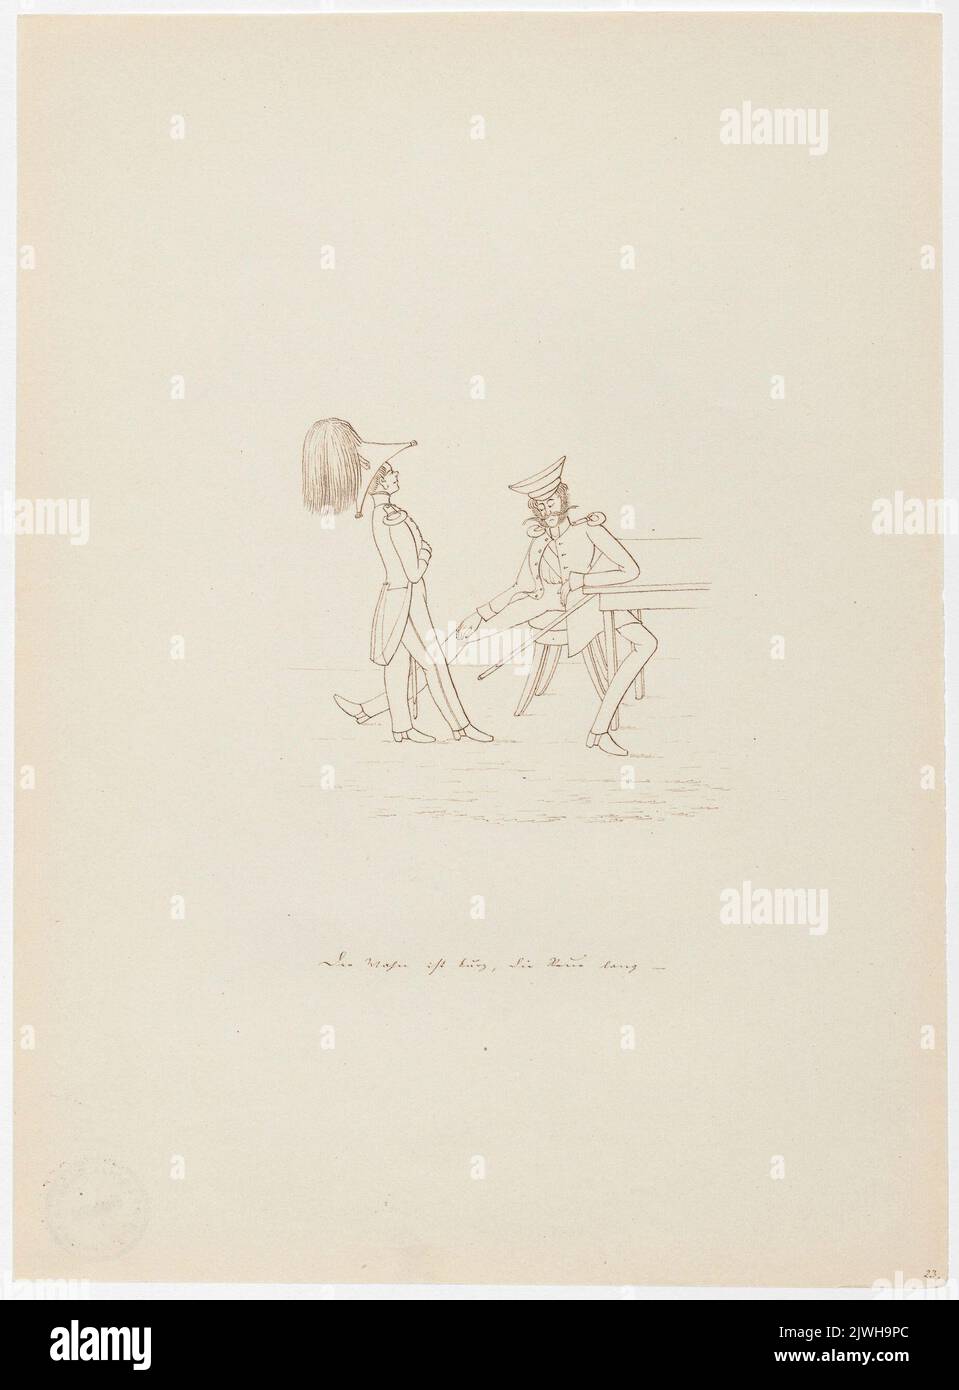 'Zaleństwo krótkie, długi żal'. Winkler, Karl Gustav Adolf (1810-1893), dessinateur, dessinateur Banque D'Images